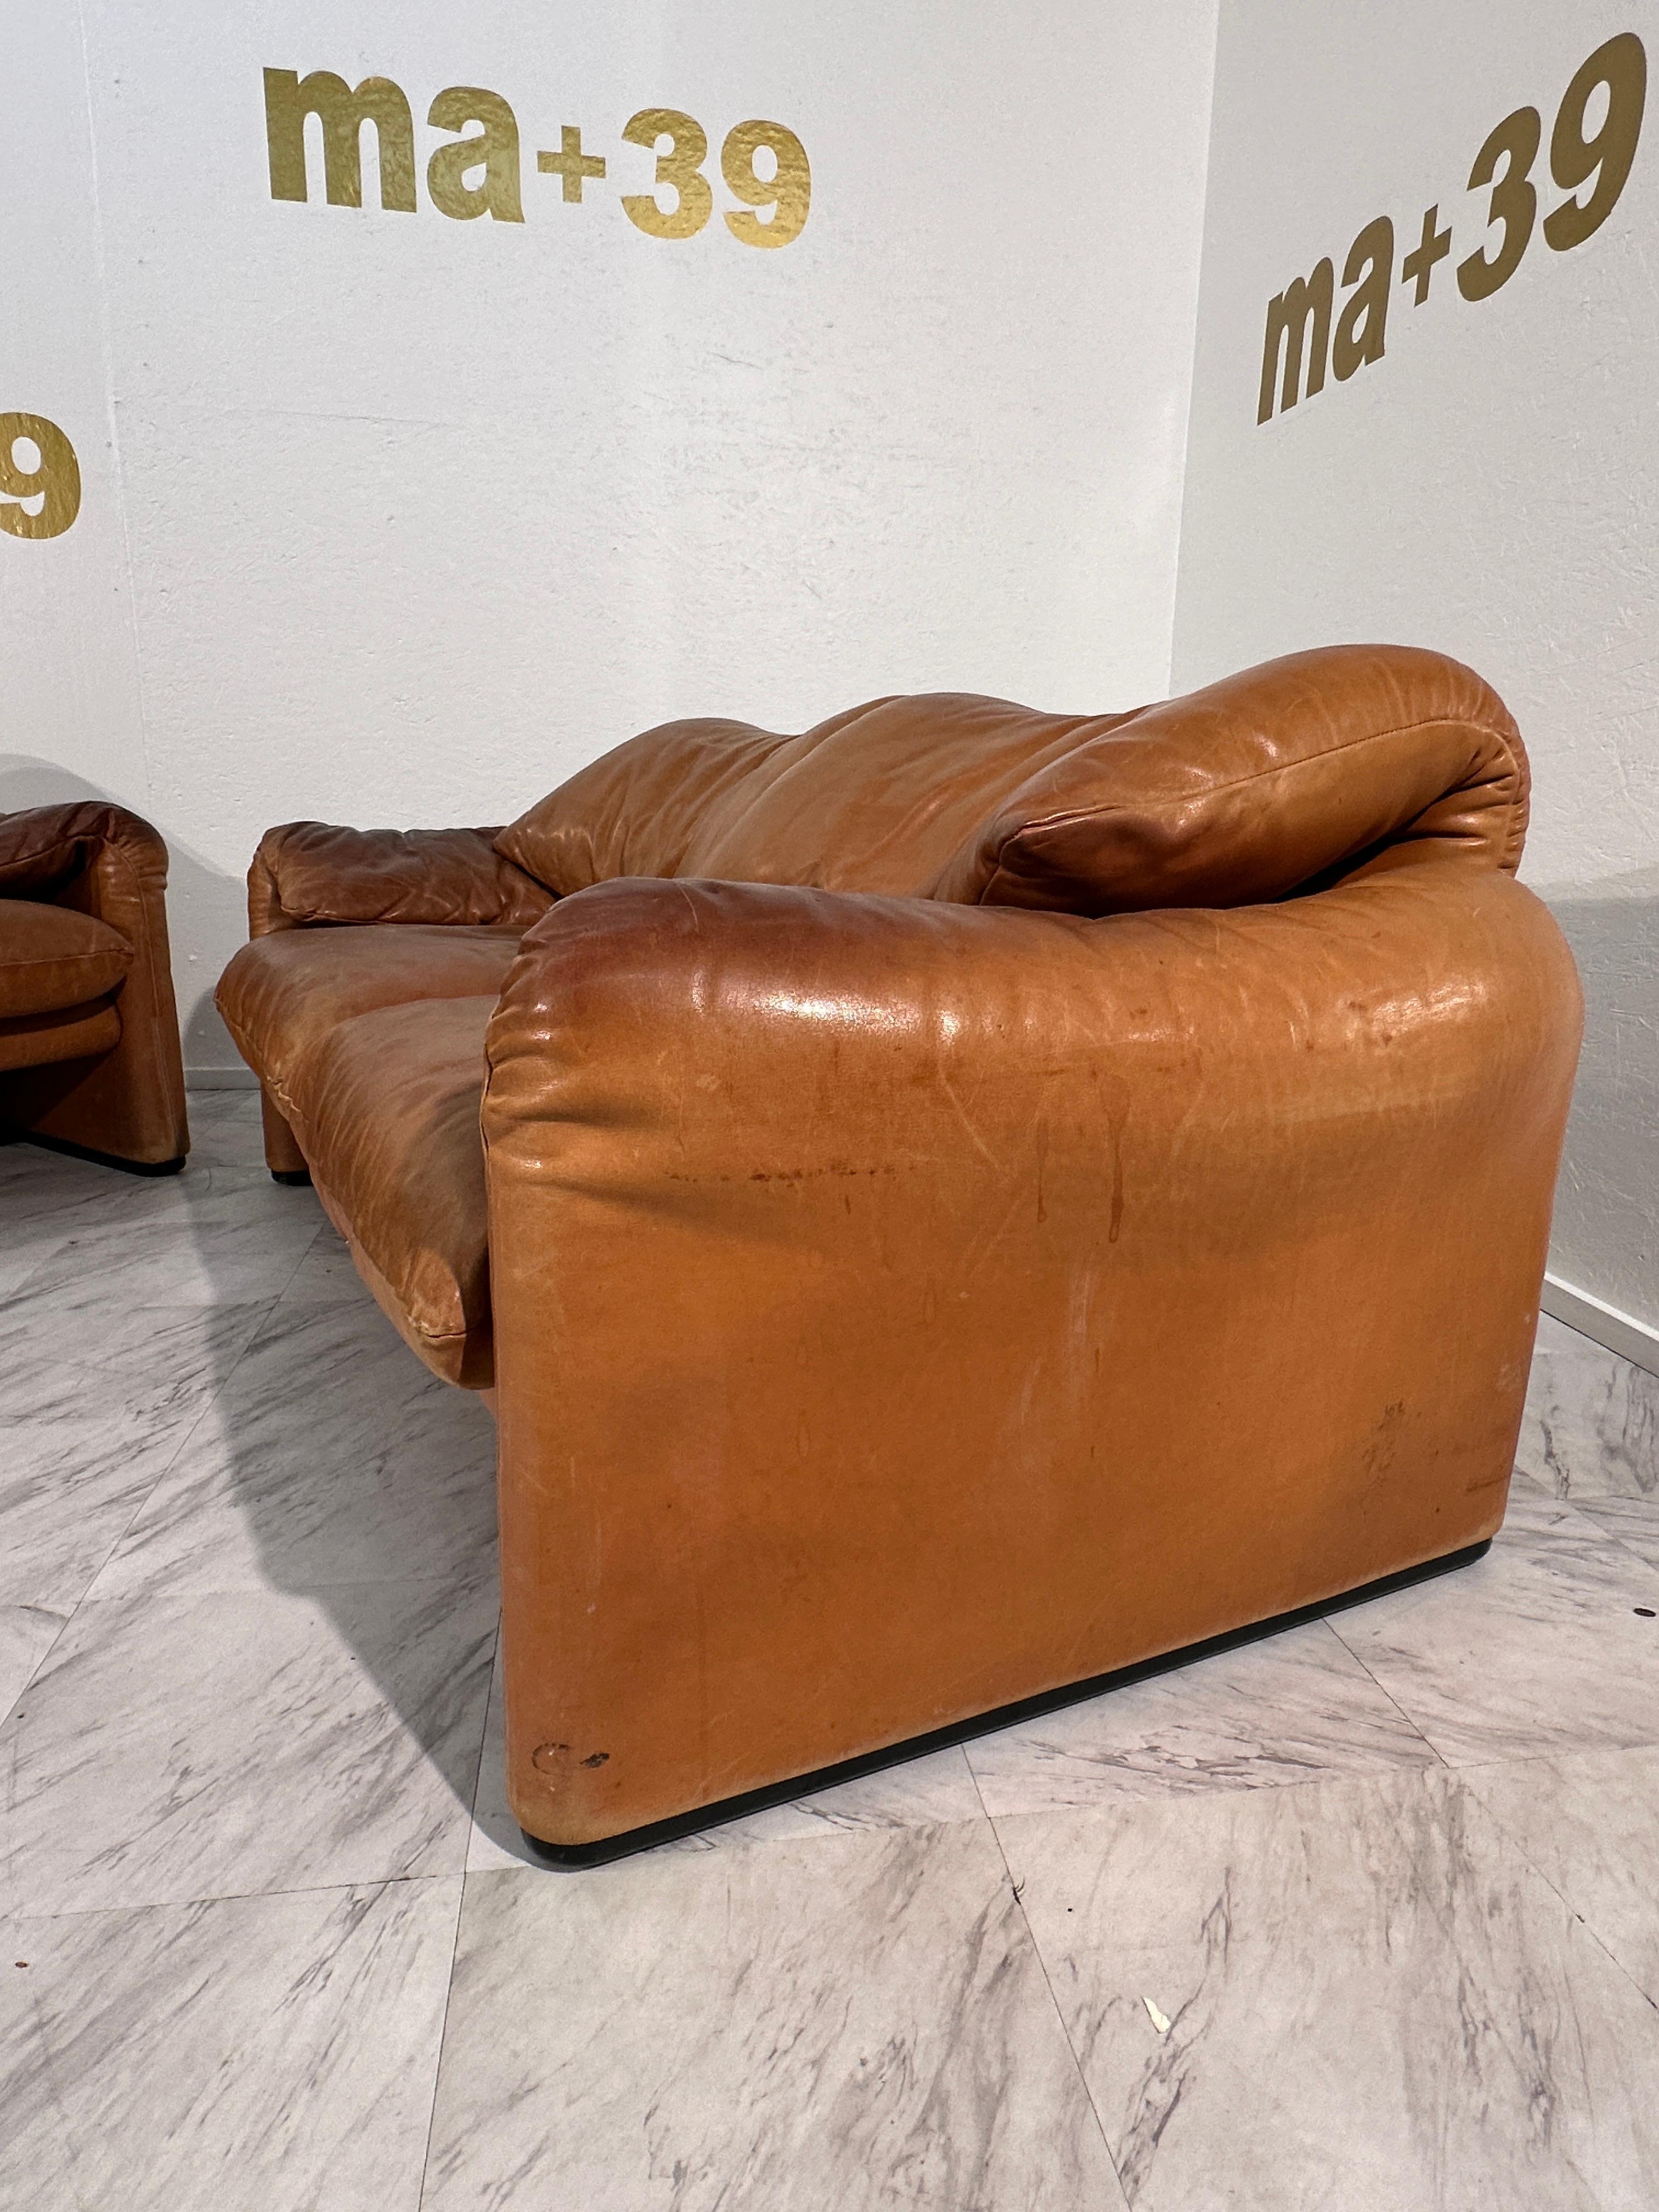 Italian Vico Magistretti Maralunga Leather Sofa by Cassina 1975 For Sale